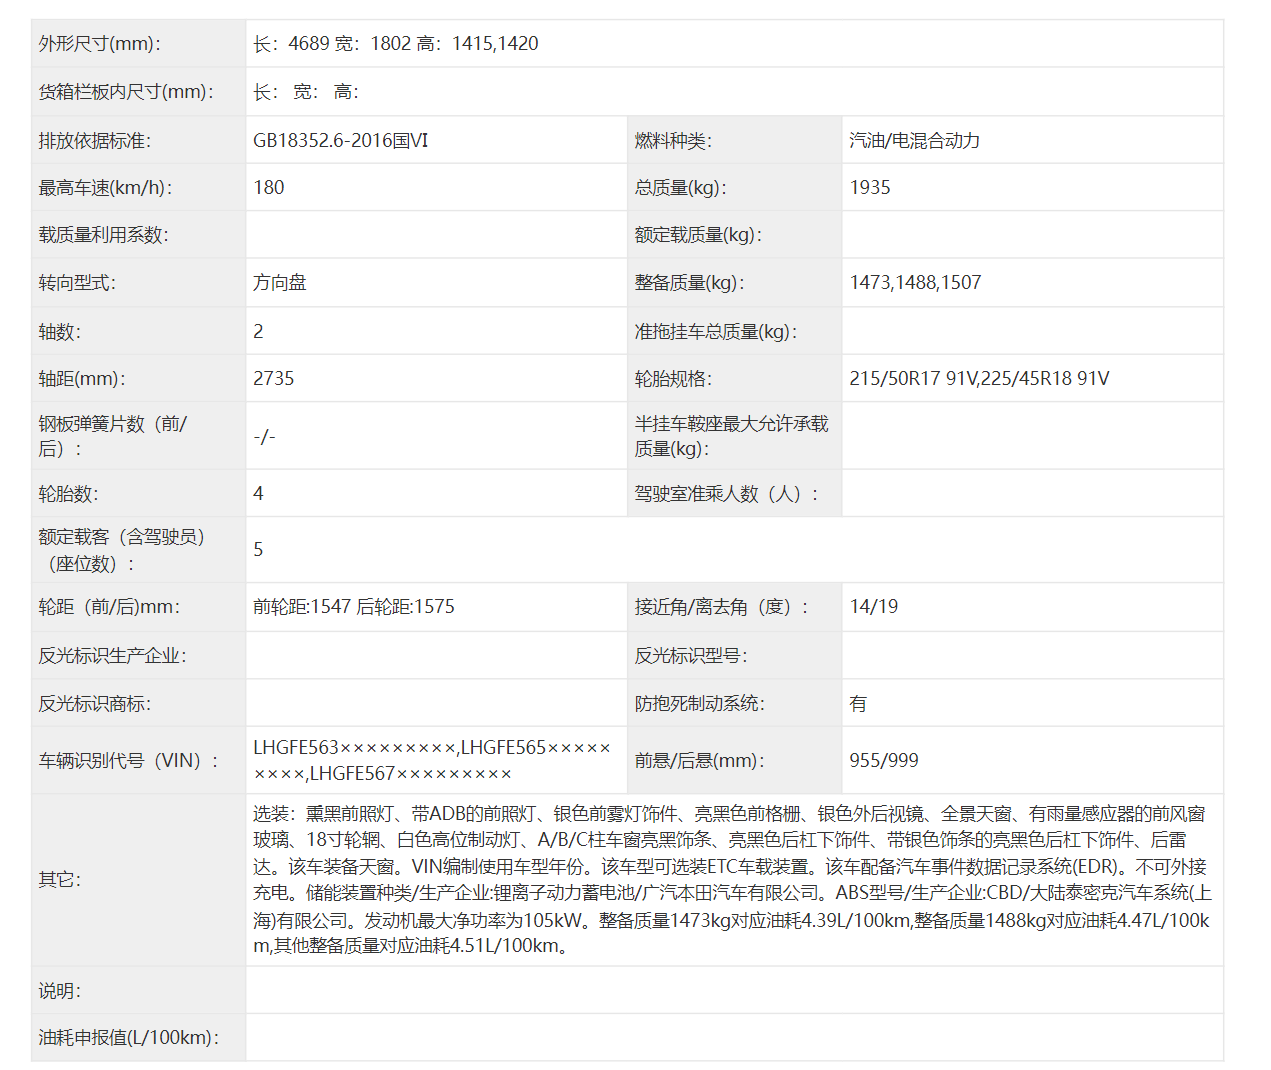 首搭第四代i-MMD的A级轿车 广汽本田型格 锐·混动申报信息曝光